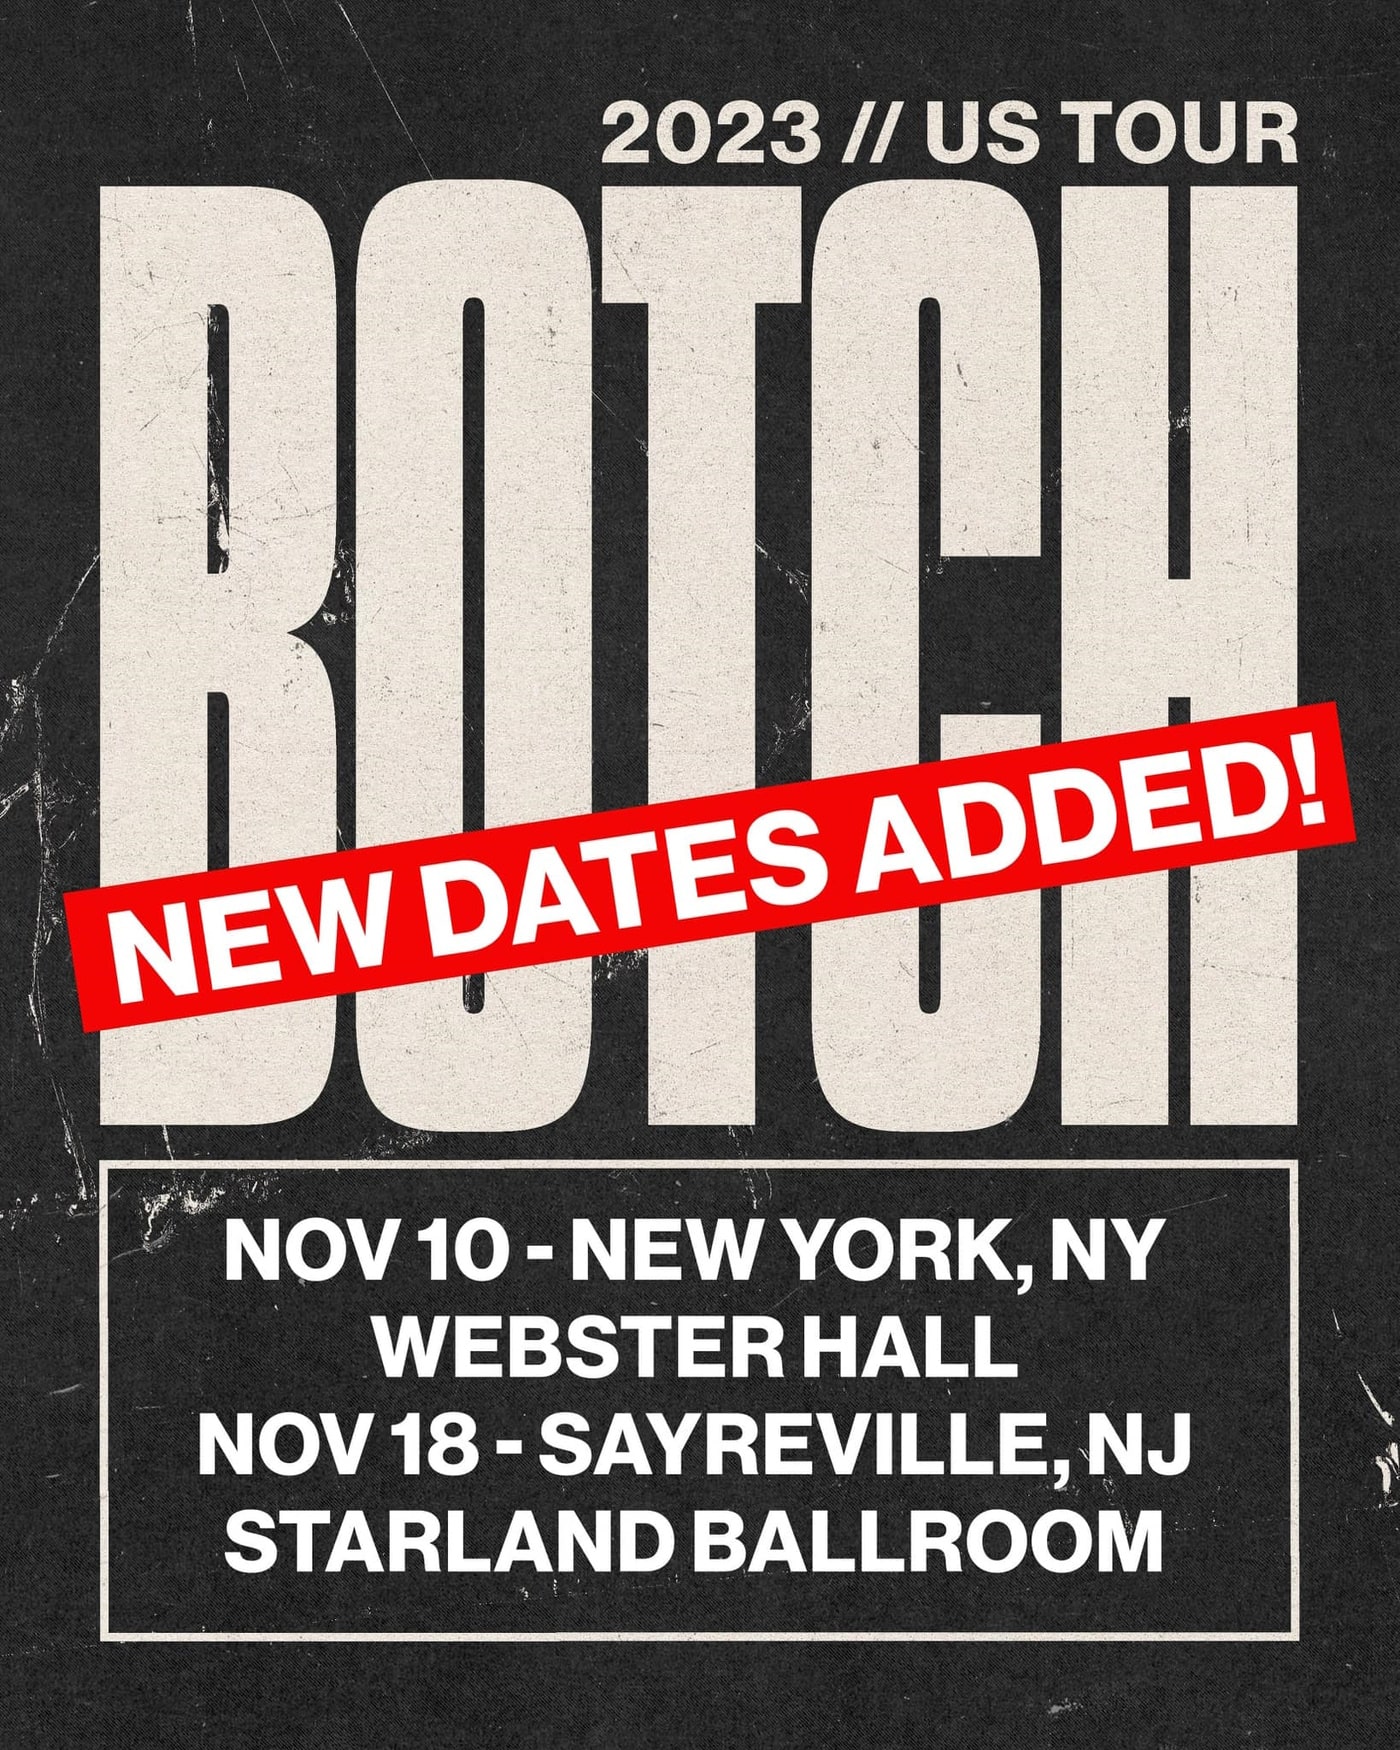 Botch reunion tour